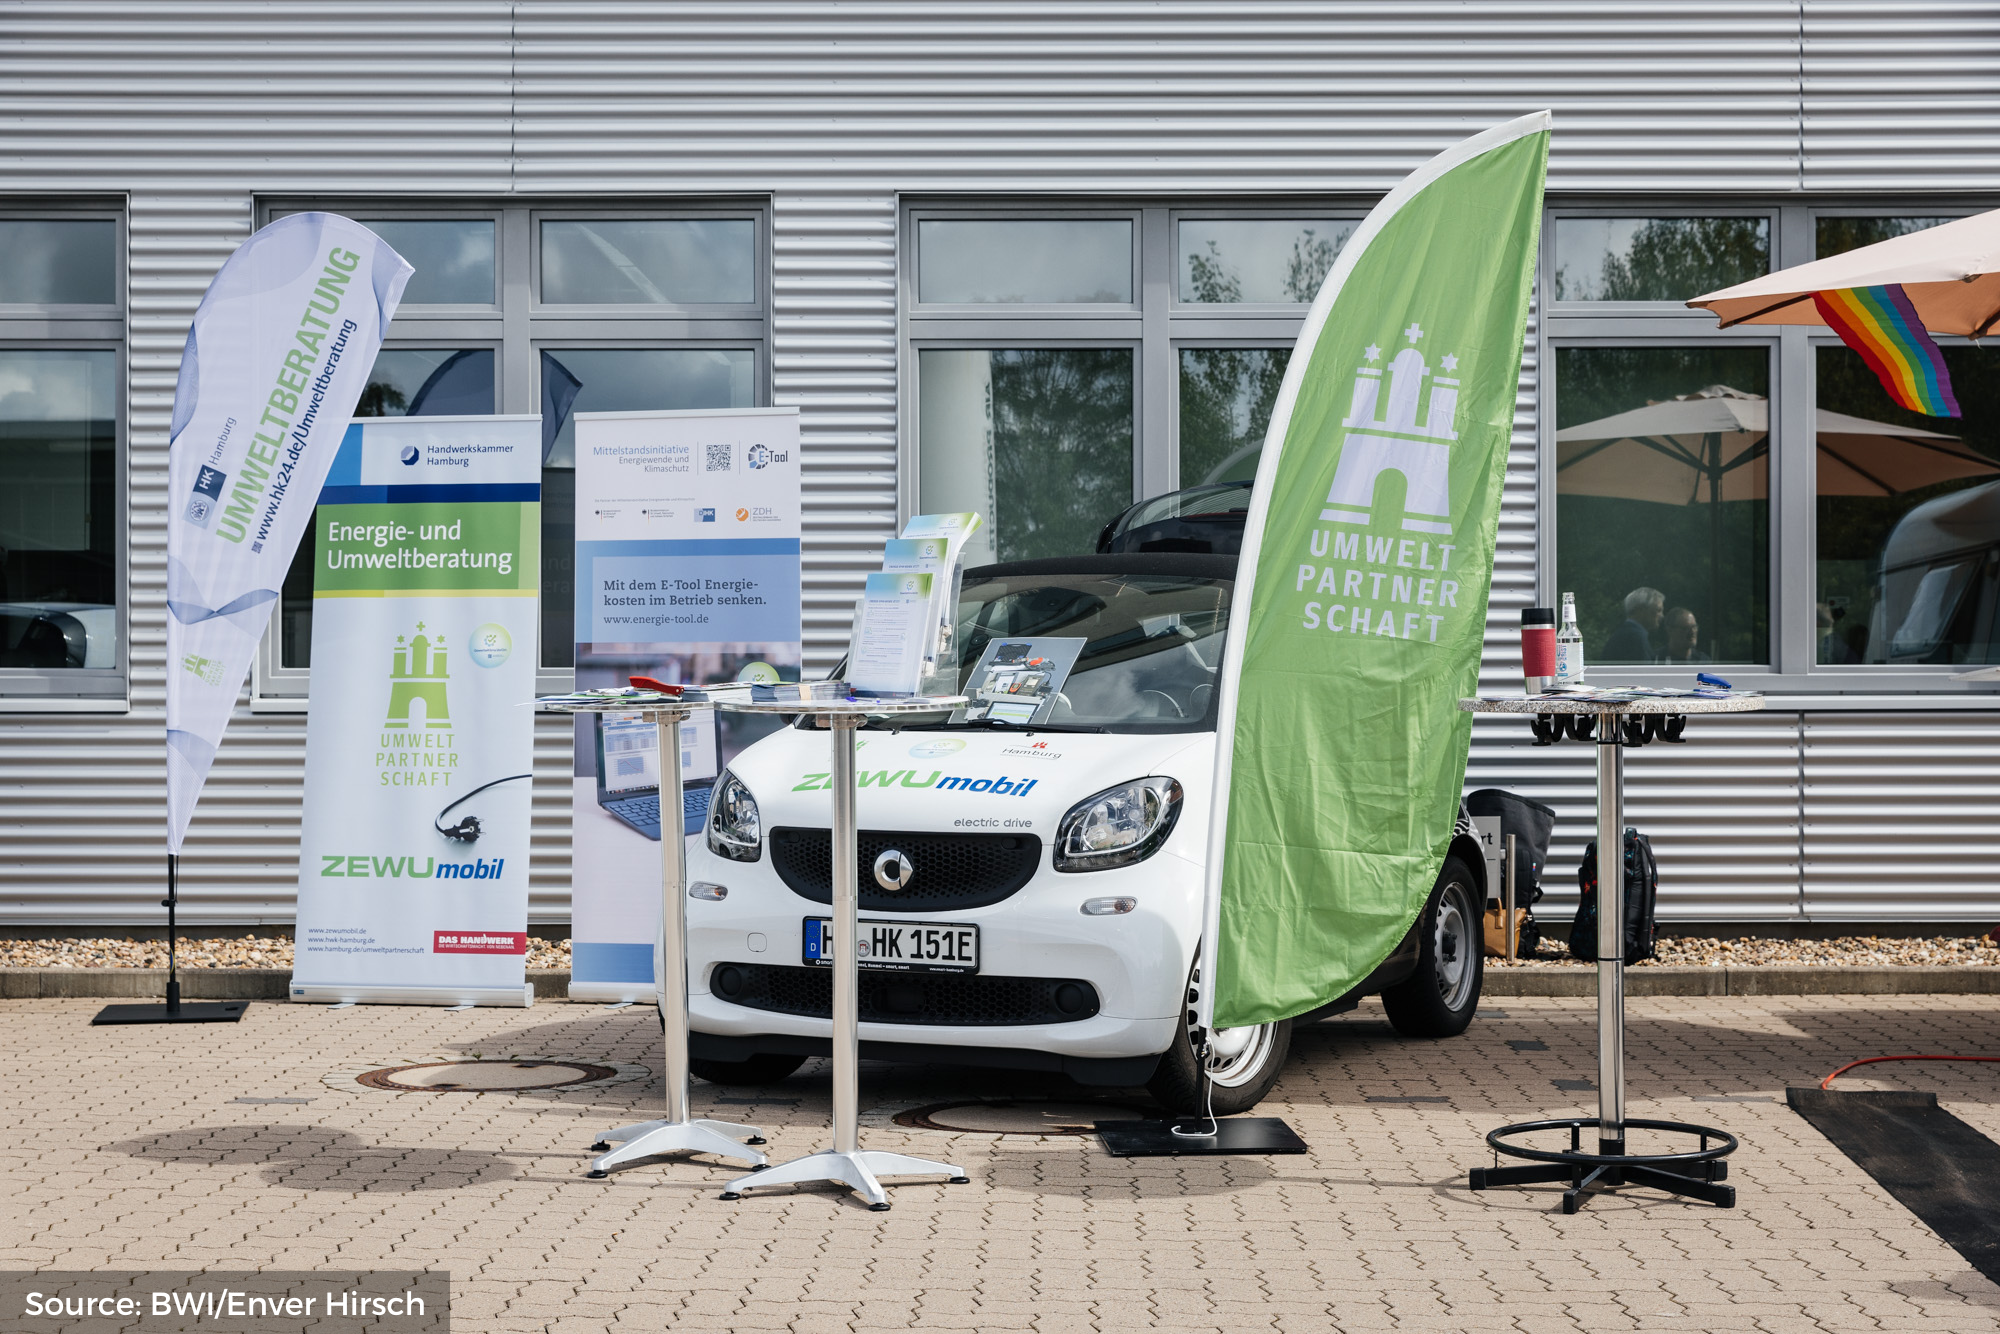 Der Elektro-Smart der Umweltpartnershaft Hamburg